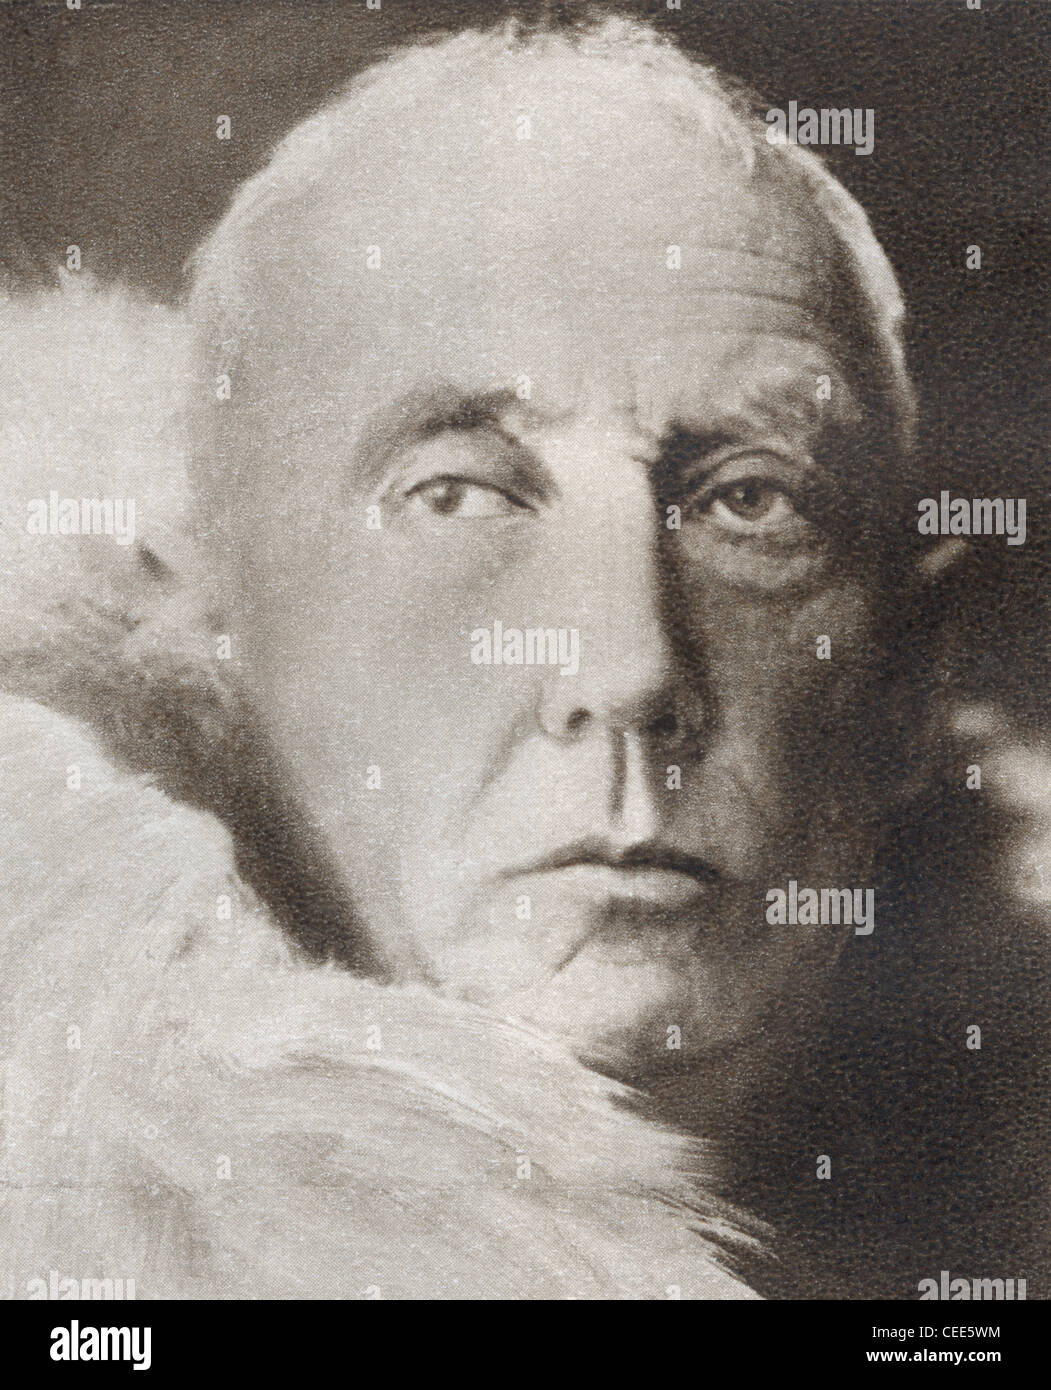 Roald Engelbregt Gravning Amundsen, 1872 - 1928. Esploratore norvegese delle regioni polari Foto Stock